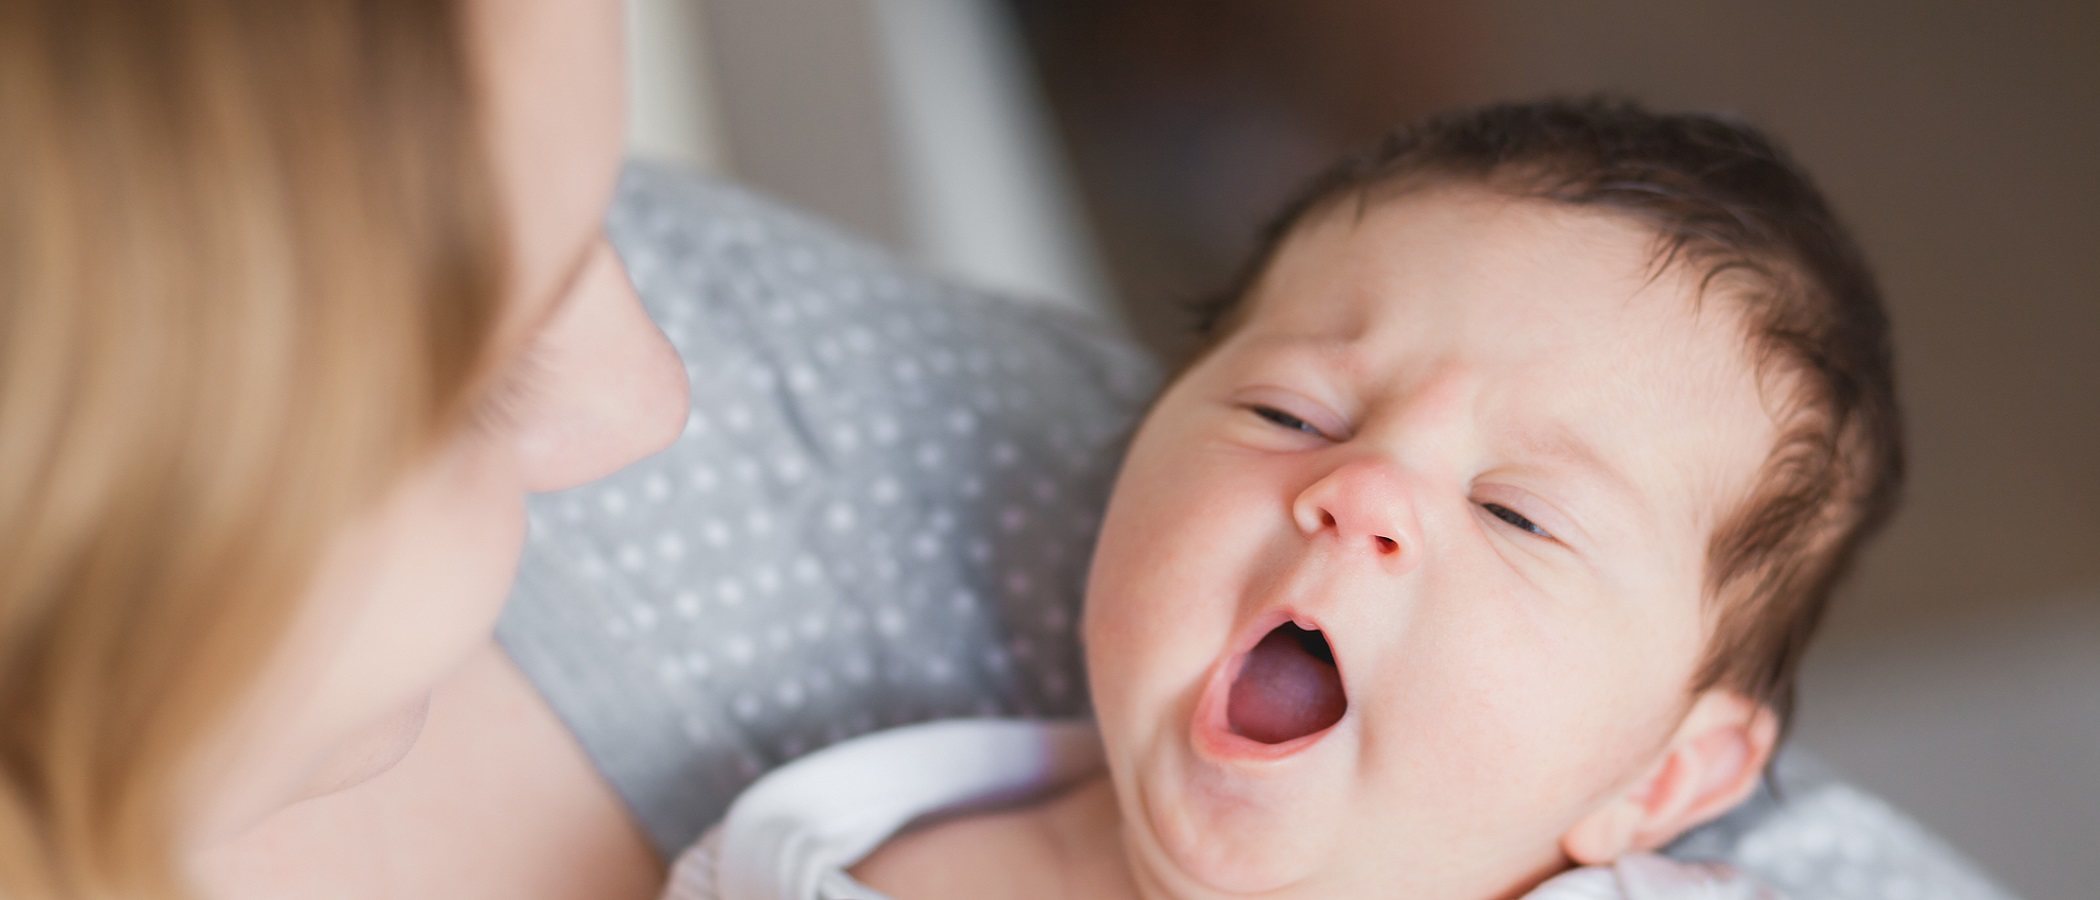 ¿Cómo se le quita el hipo a un recién nacido?